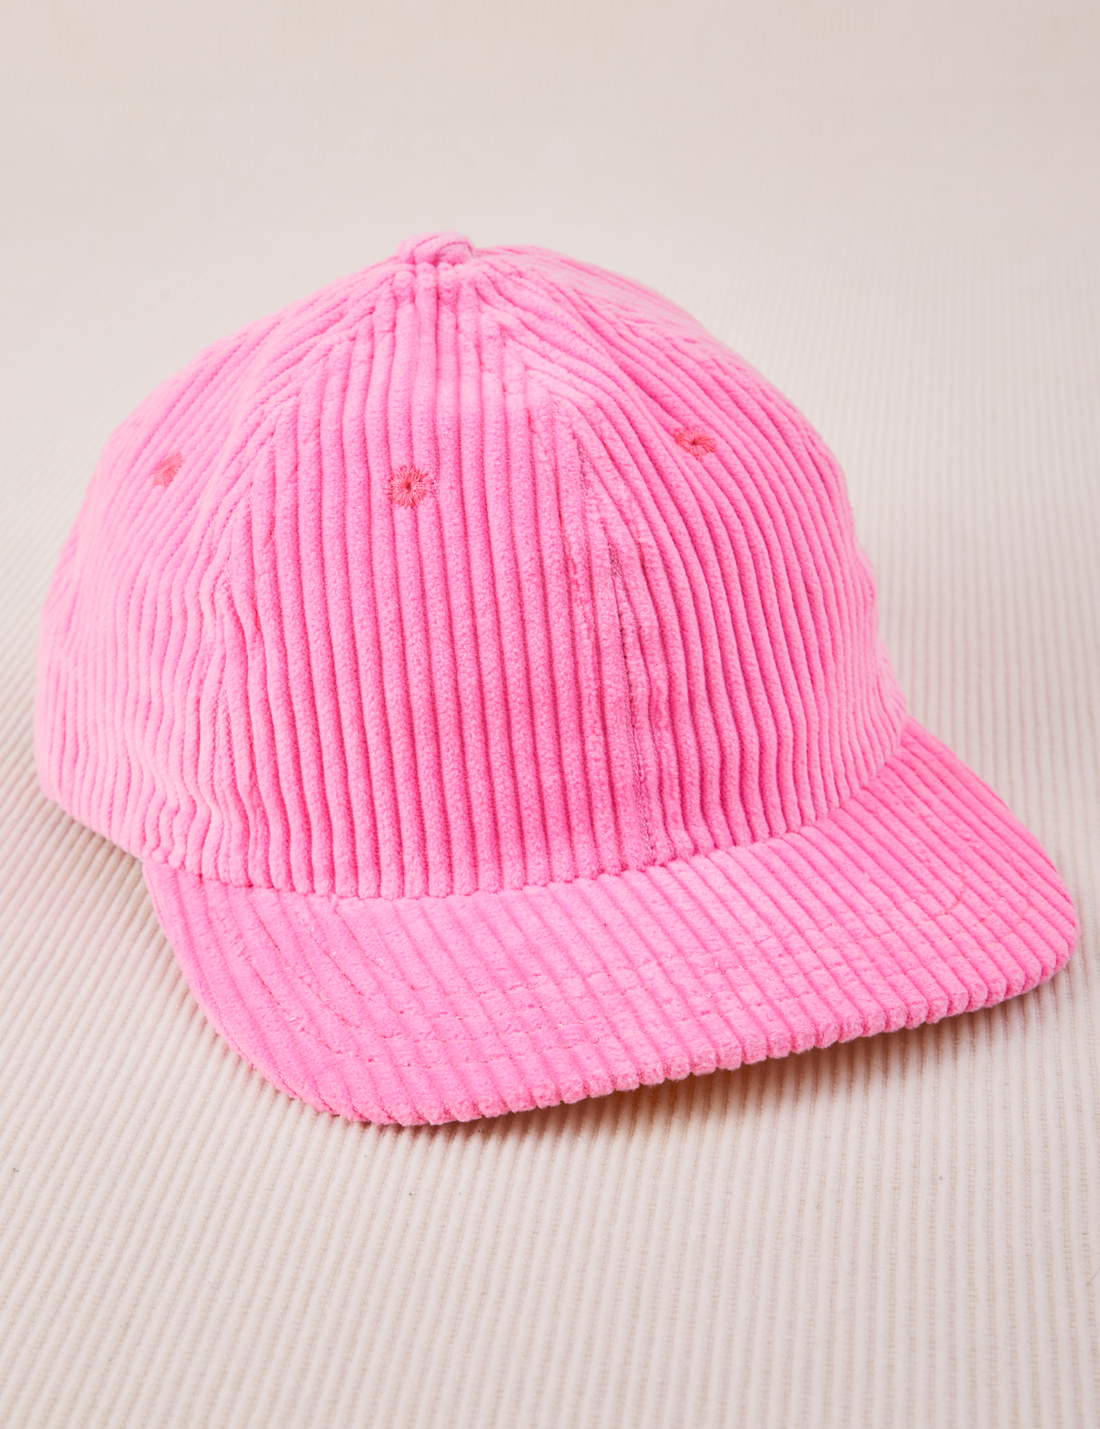 Dugout Corduroy Hat in Bubblegum Pink